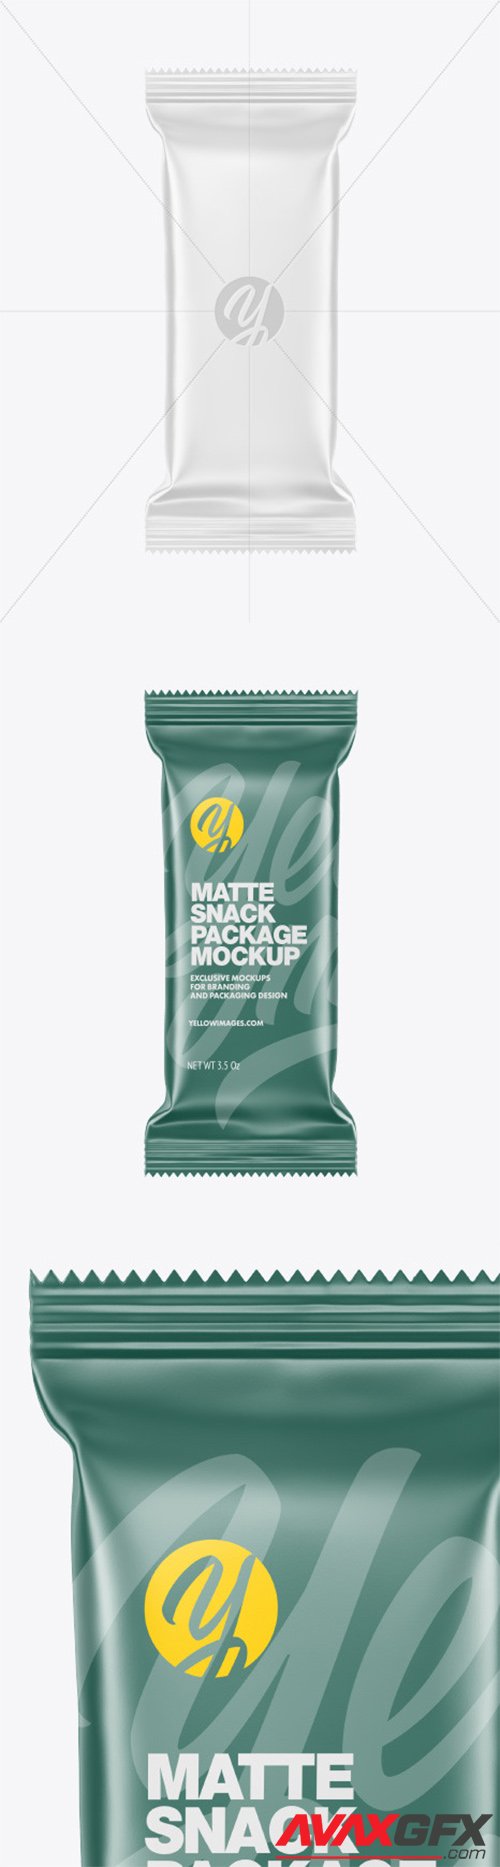 Matte Snack Package Mockup 78738 TIF